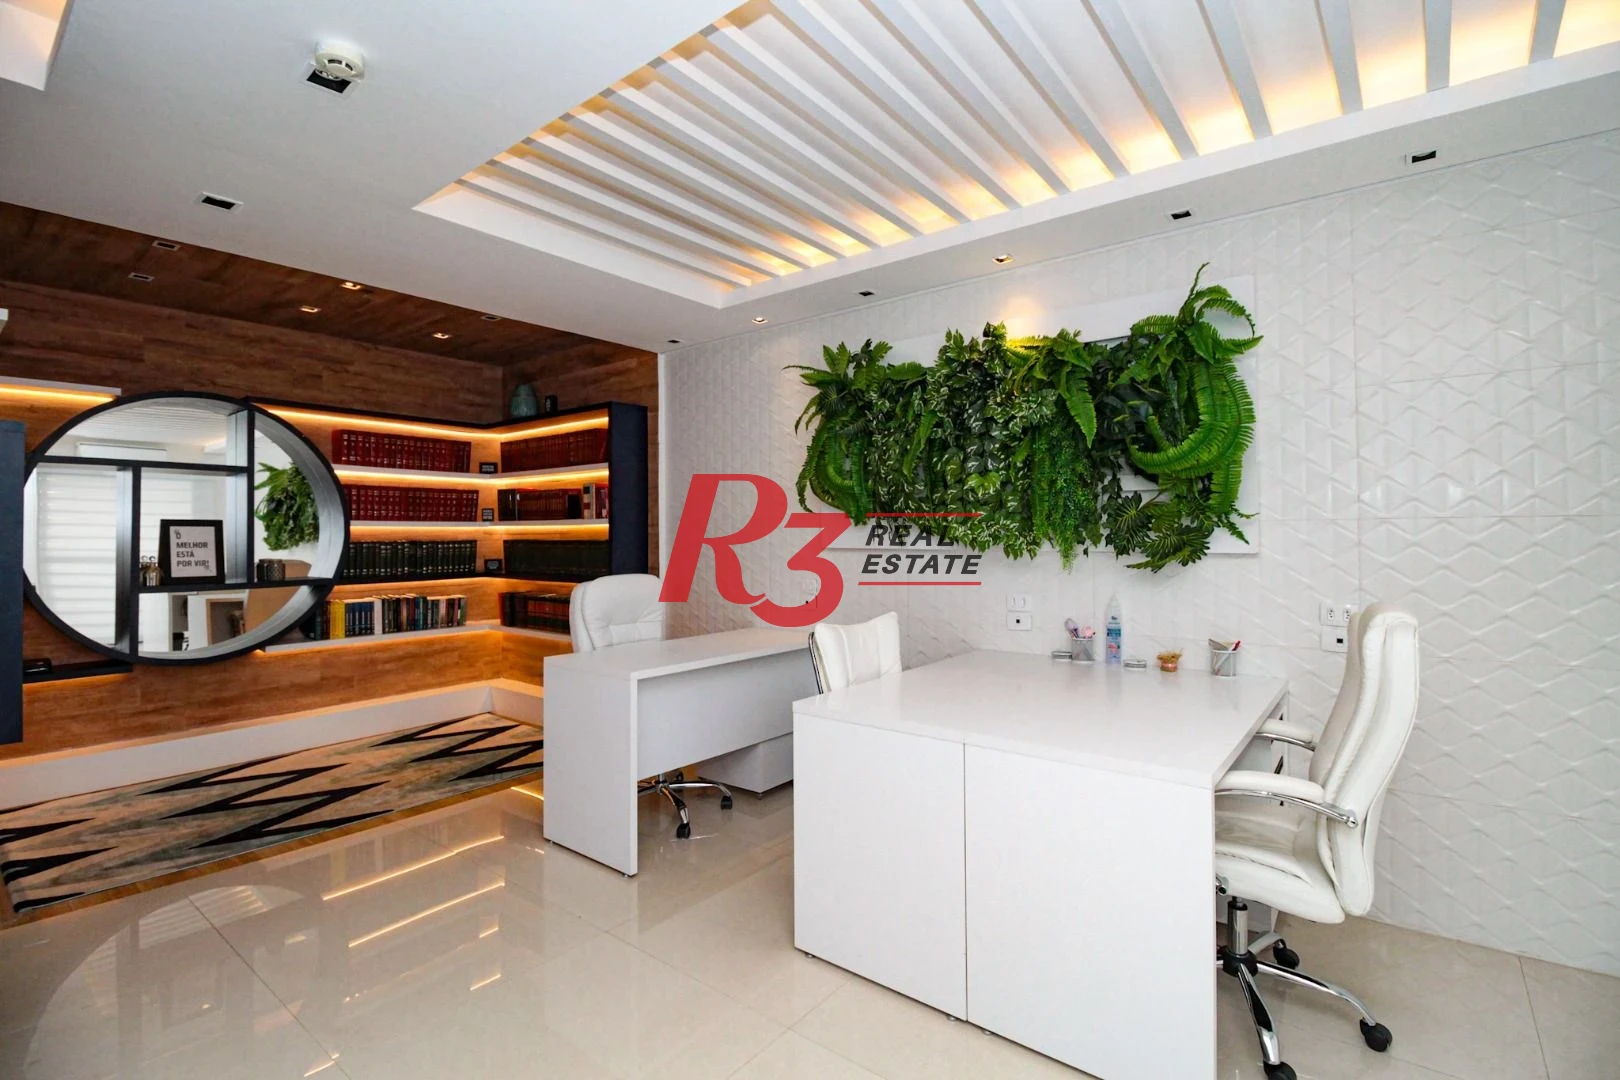 Sala à venda, 82 m² por R$ 495.000,00 - Vila Matias - Santos/SP